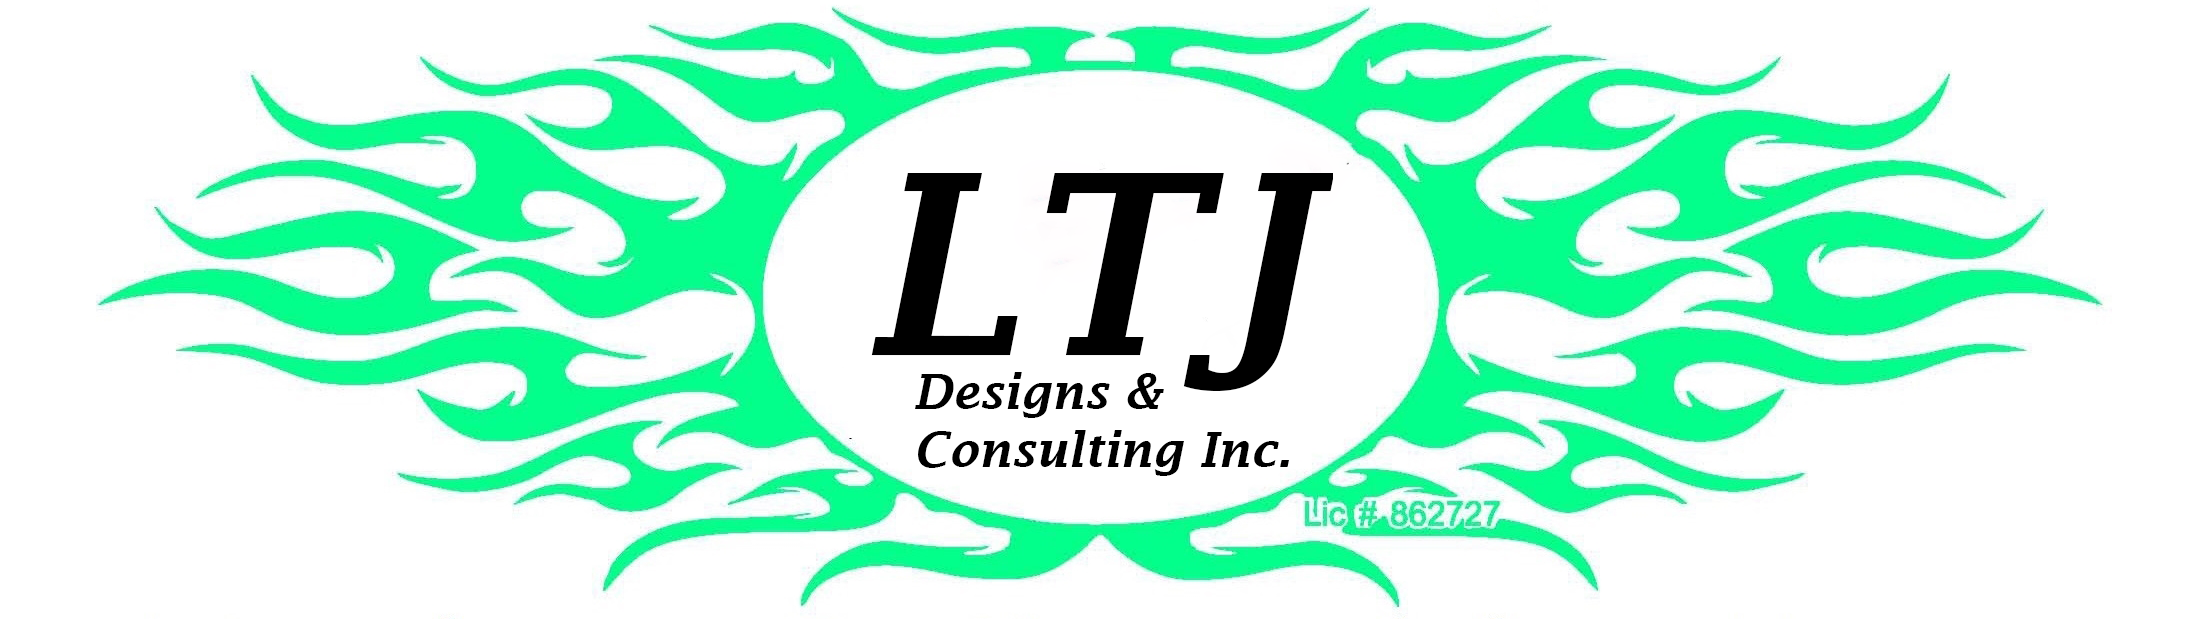 LTJ Designs & Consulting Inc.